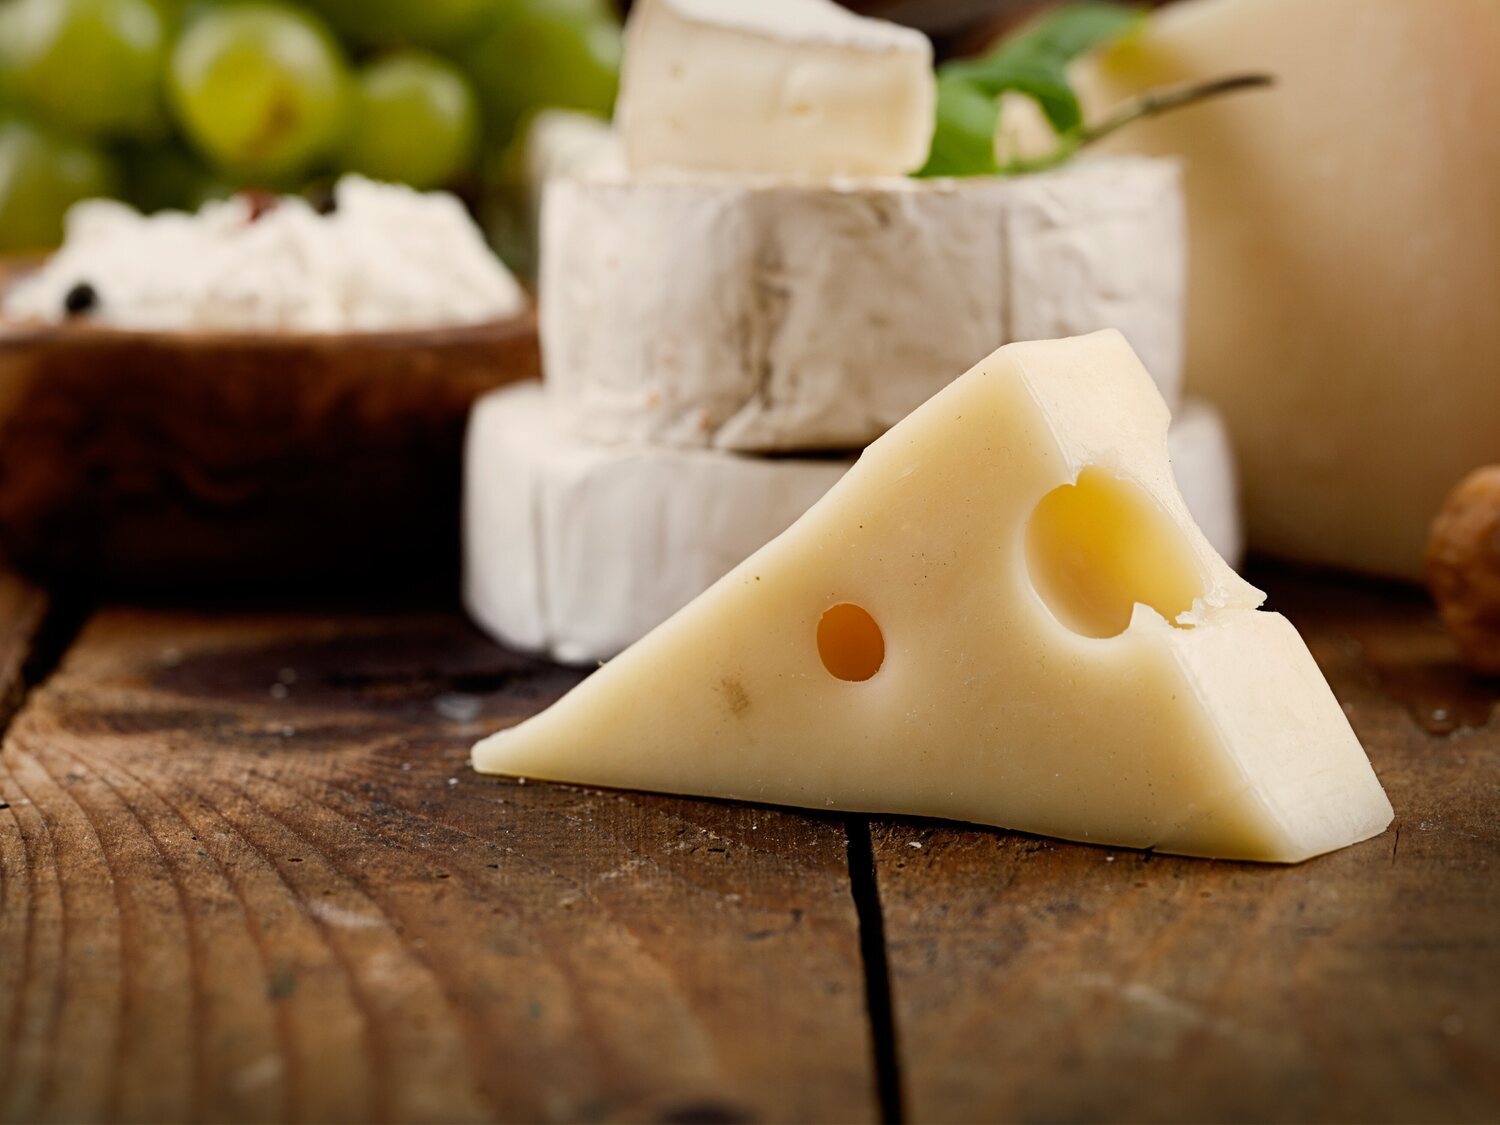 Alerta alimentaria: Sanidad retira de la venta este popular queso del supermercado y pide evitar su consumo